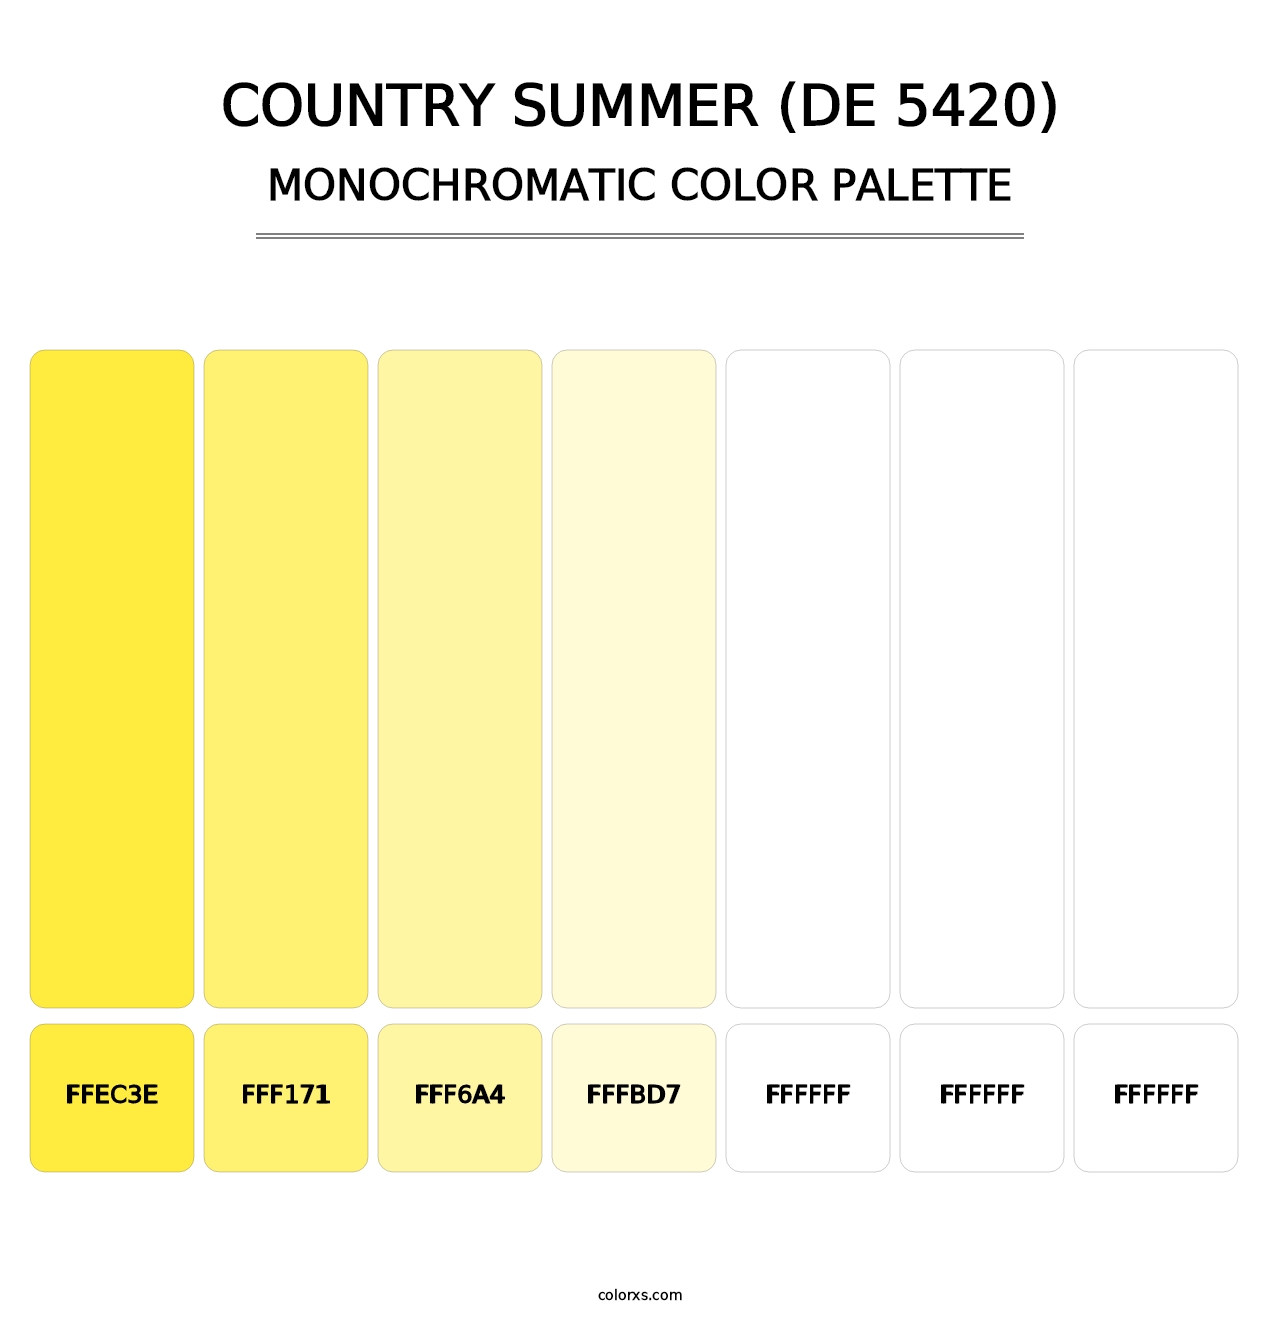 Country Summer (DE 5420) - Monochromatic Color Palette